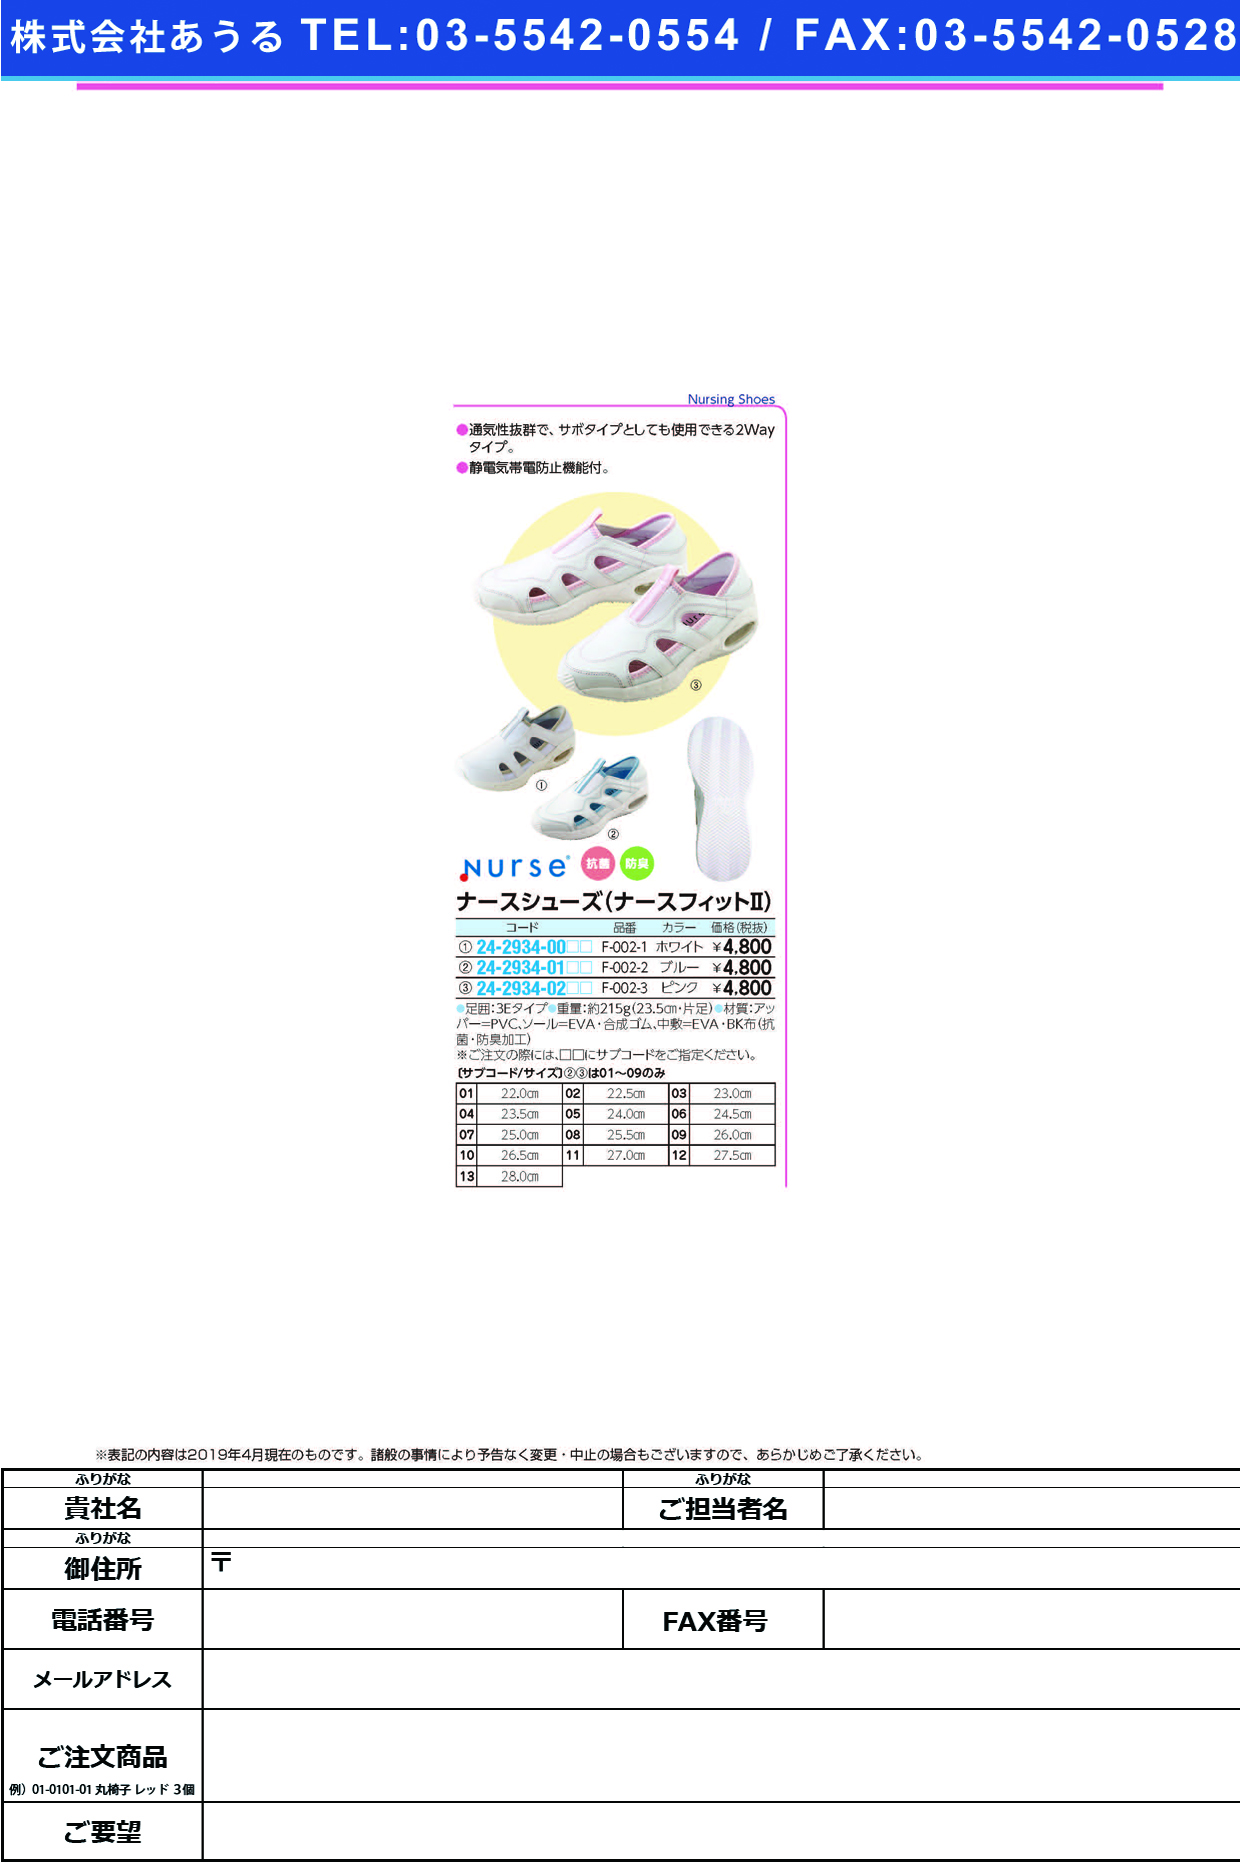 (24-2934-01)ナースシューズナースフィットⅡ F-002-2(ﾌﾞﾙｰ) ﾅｰｽｼｭｰｽﾞﾅｰｽﾌｨｯﾄ2 ２３．５ｃｍ(フォーク)【1足単位】【2019年カタログ商品】